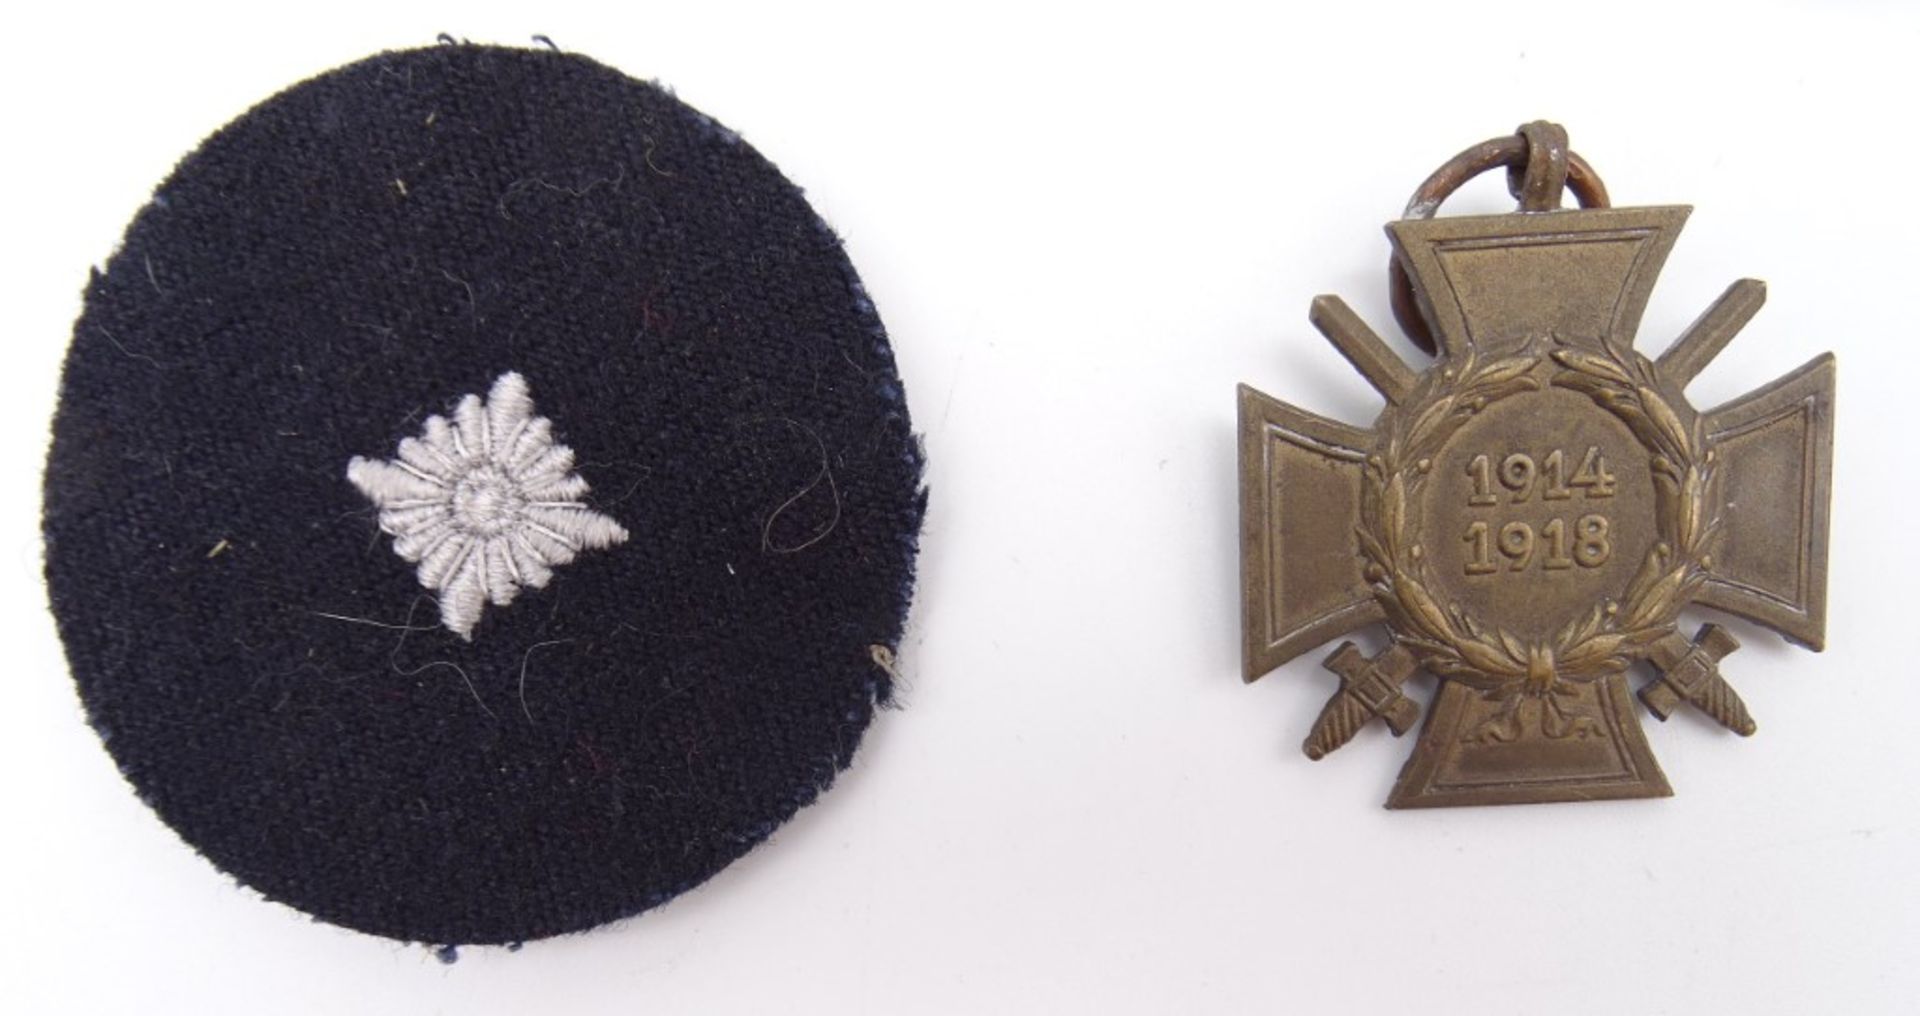 5 Abzeichen/Medaillen, Kyffhäuserbund, 2 Feldspangen, Kriegsverdienstkreuz, Schützenabzeichen? - Bild 2 aus 4